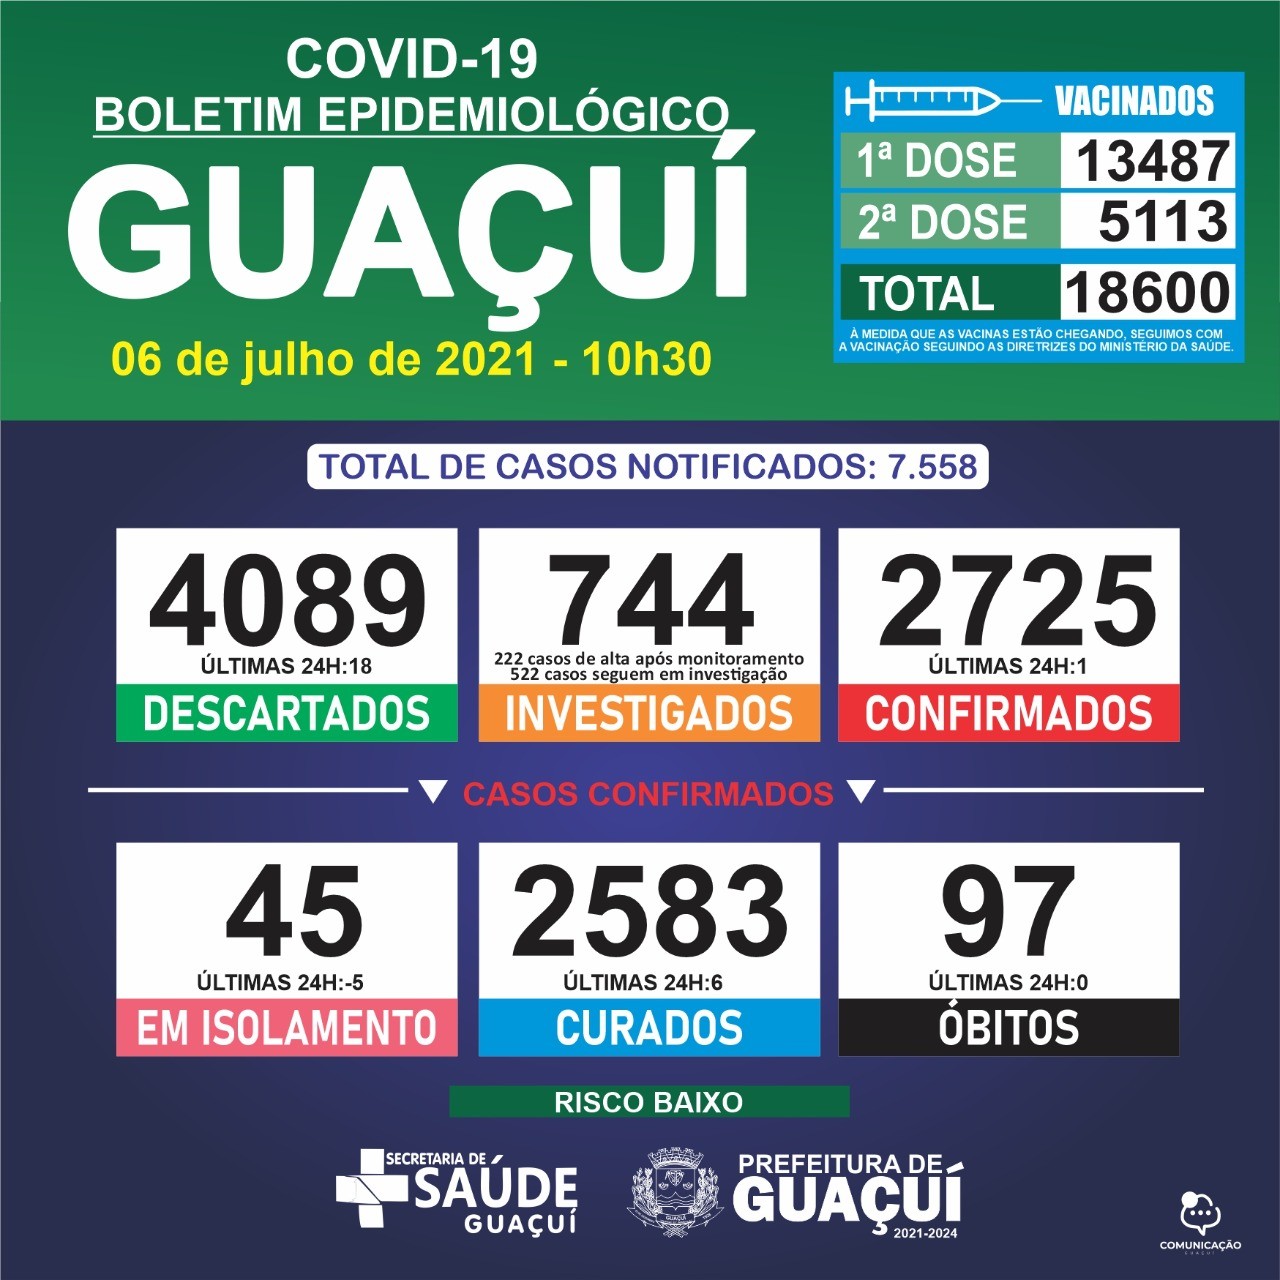 Boletim Epidemiológico 05/07/21: Guaçuí registra 3 casos confirmados e 1 curado nas últimas 24 horas-c7s6p5uaad